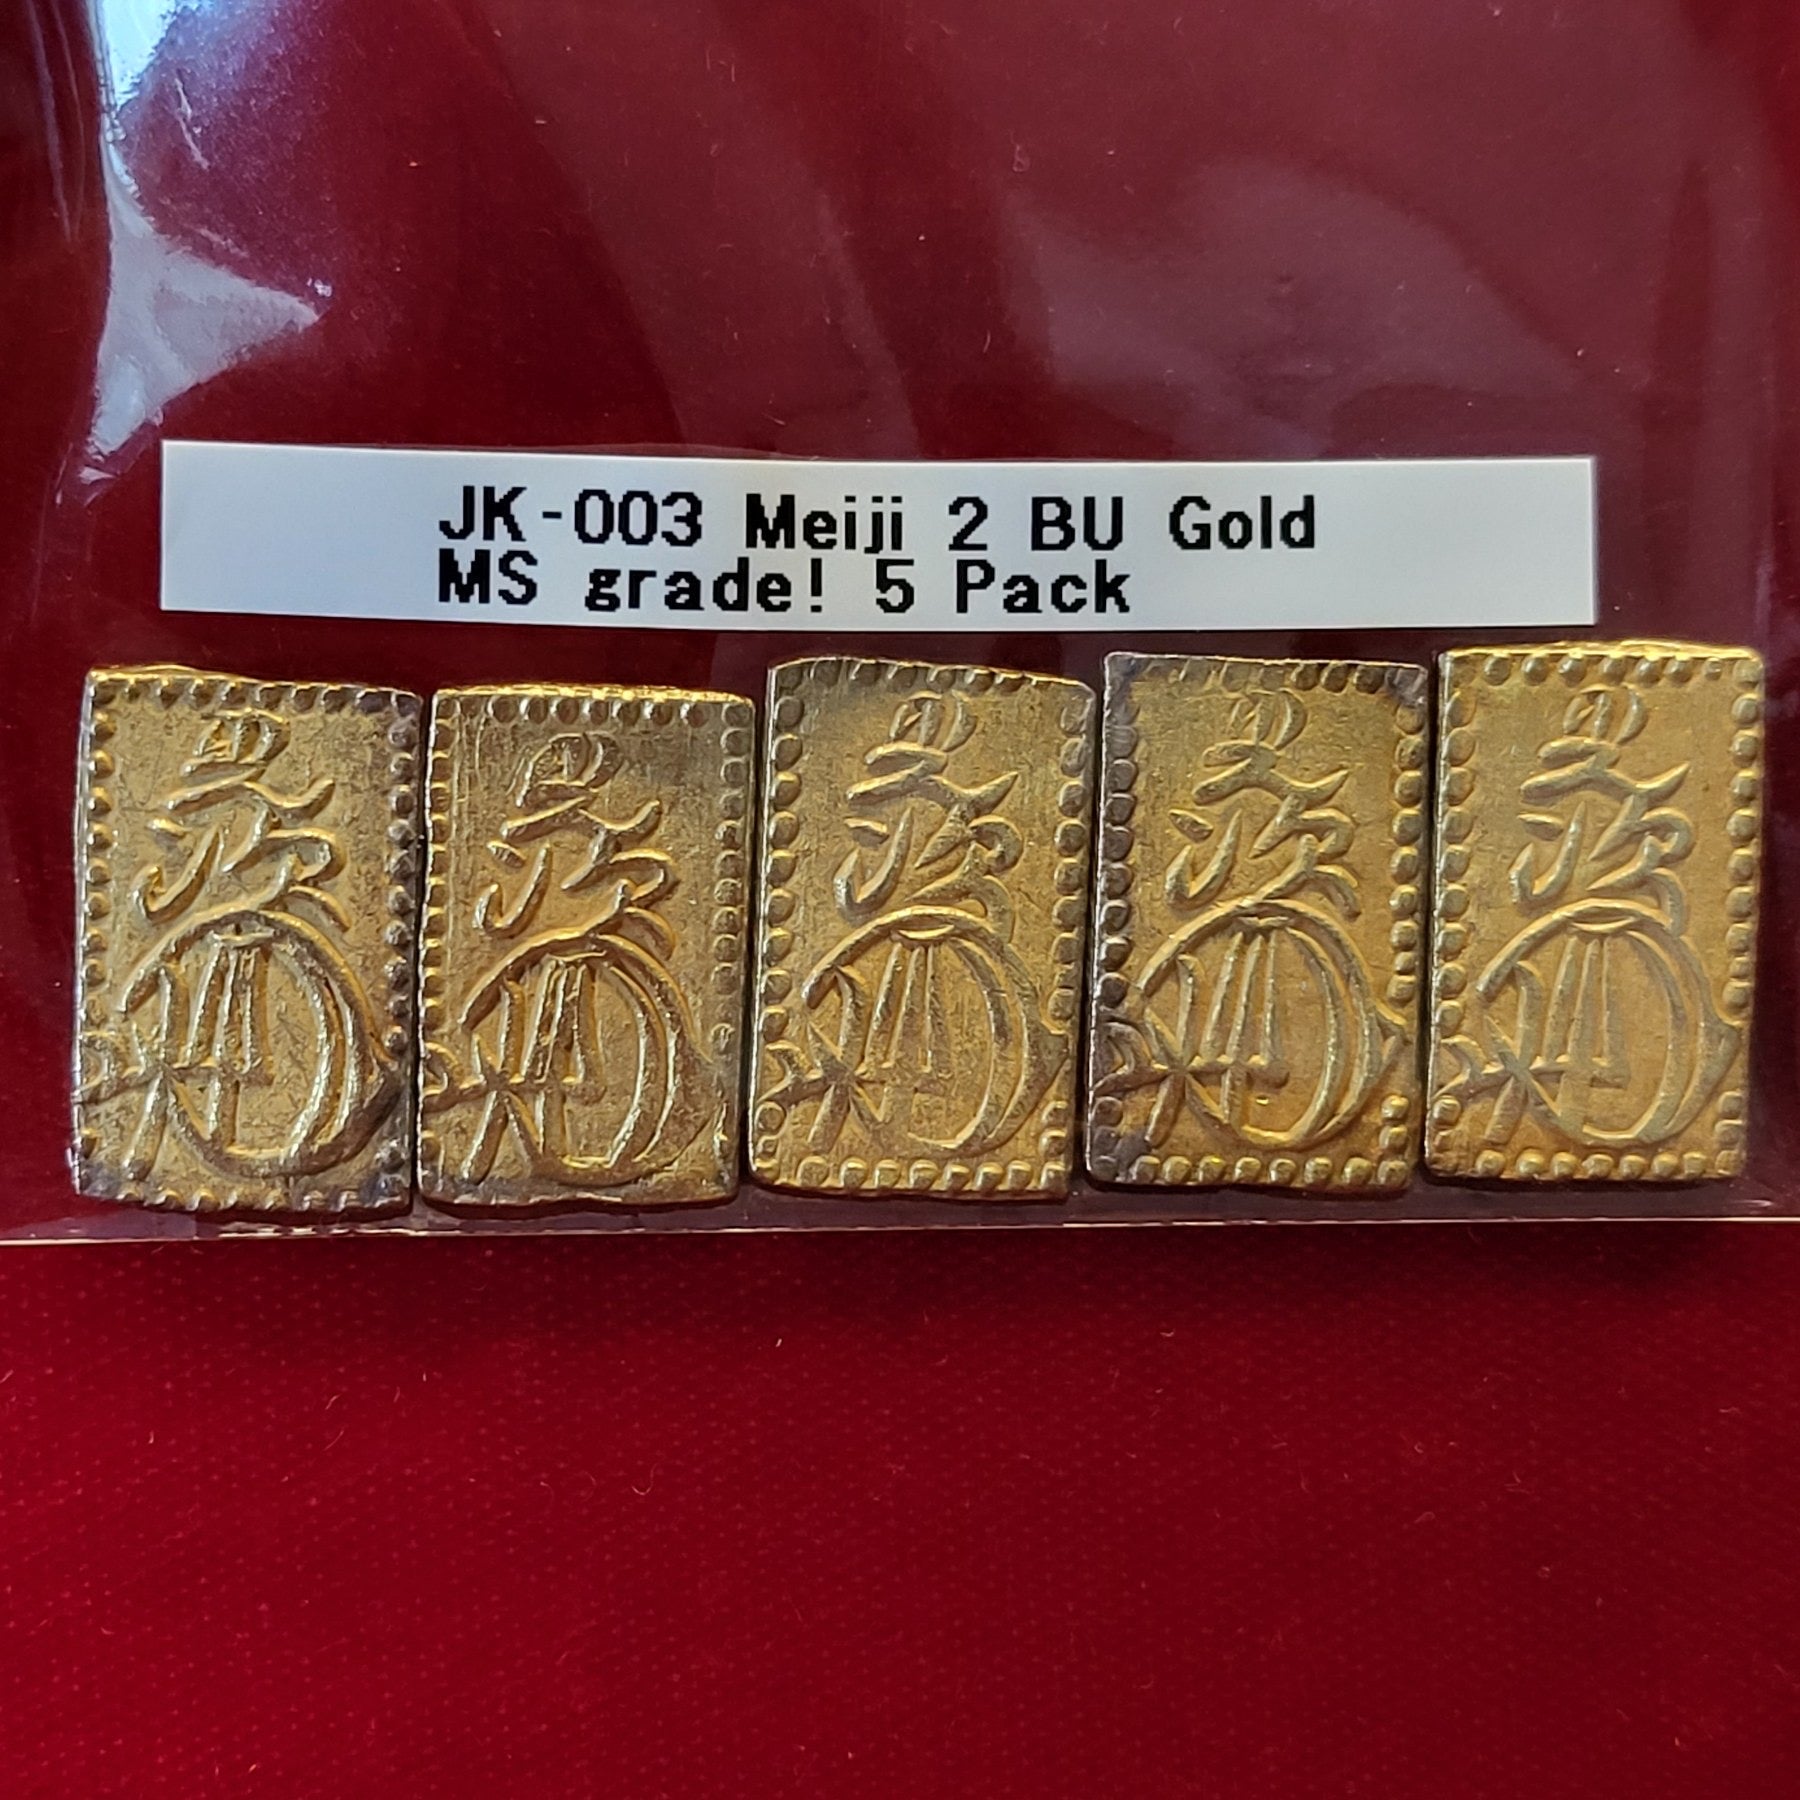 Meiji 2 Bu Gold MS grade! 5 Pack